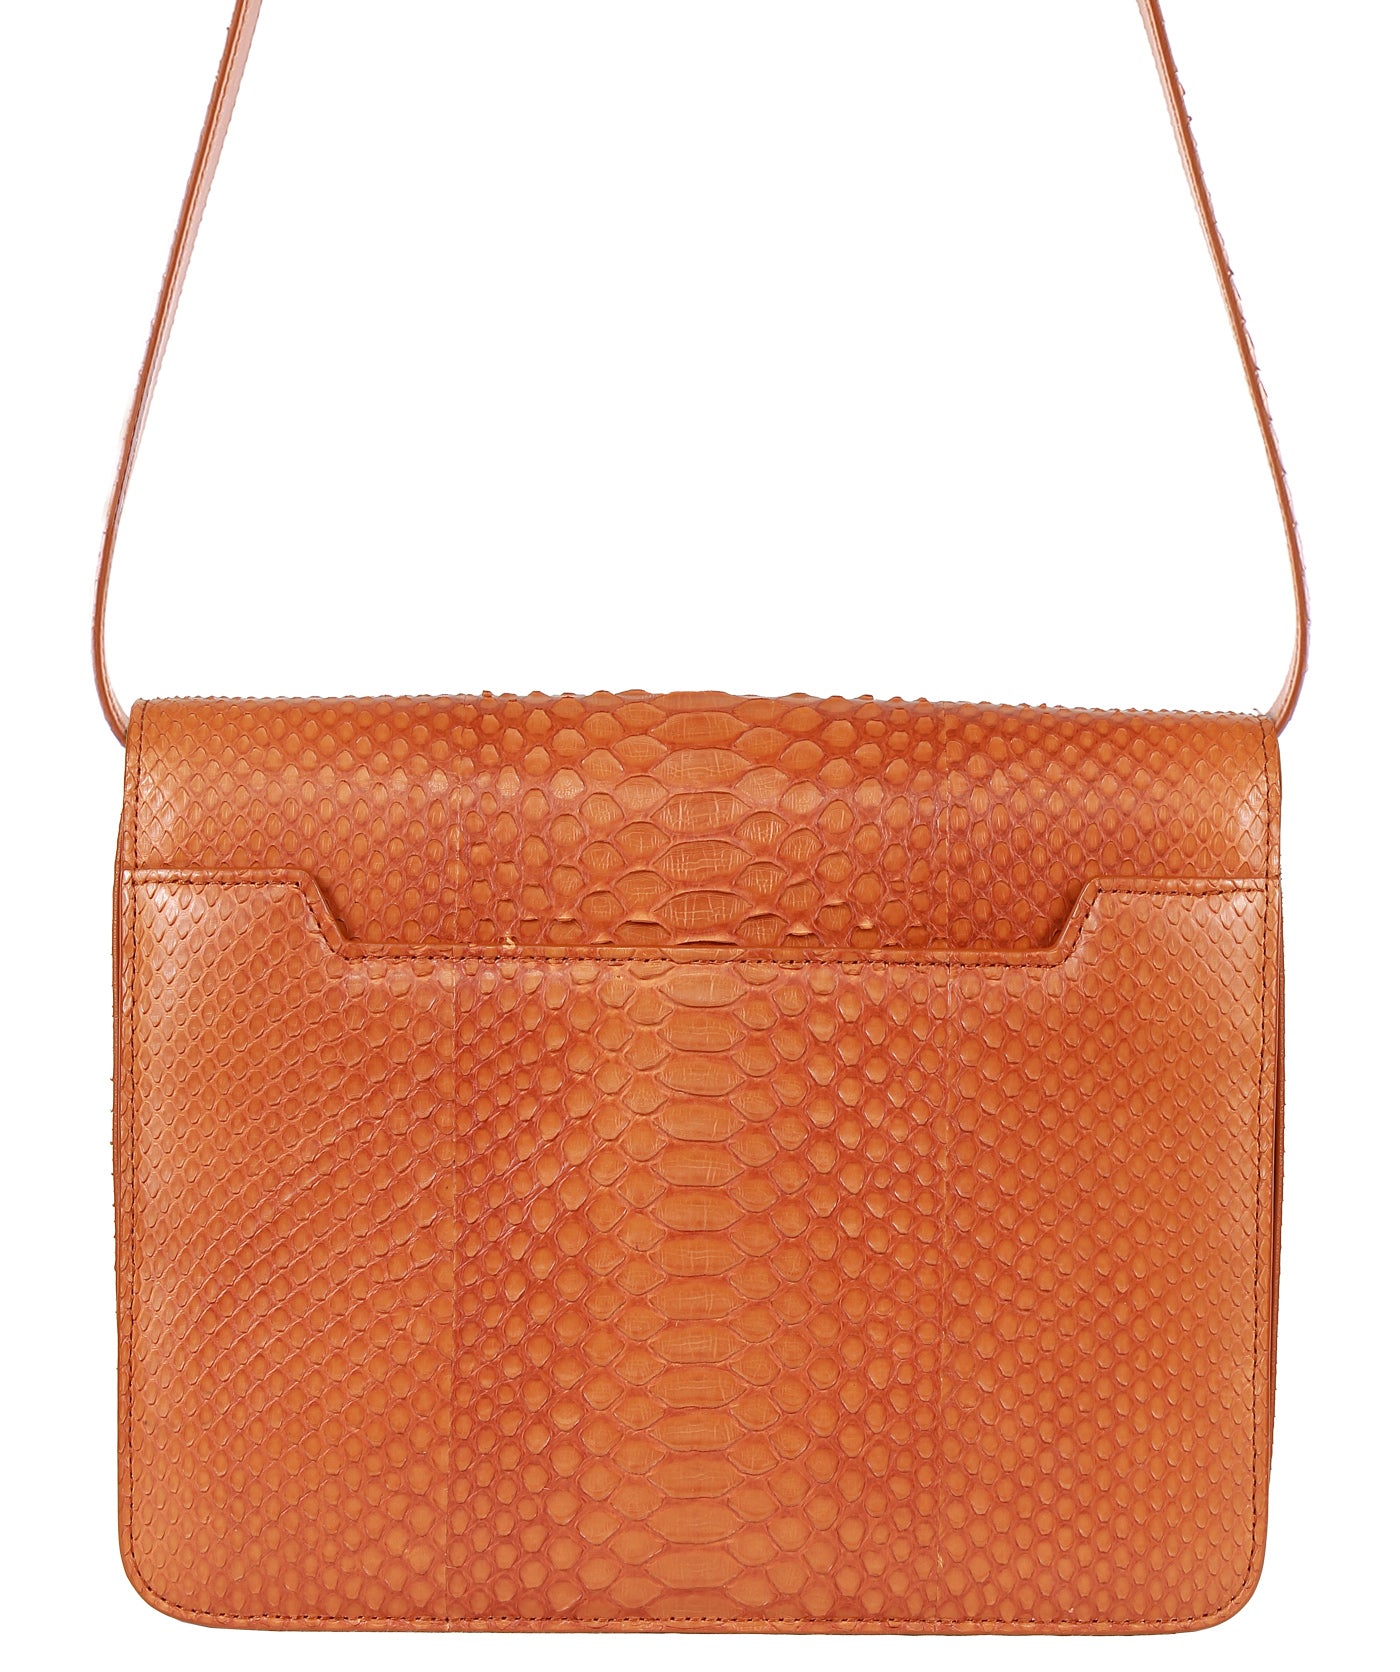 T*m Ford Natalia Python shoulder bag (2colors)